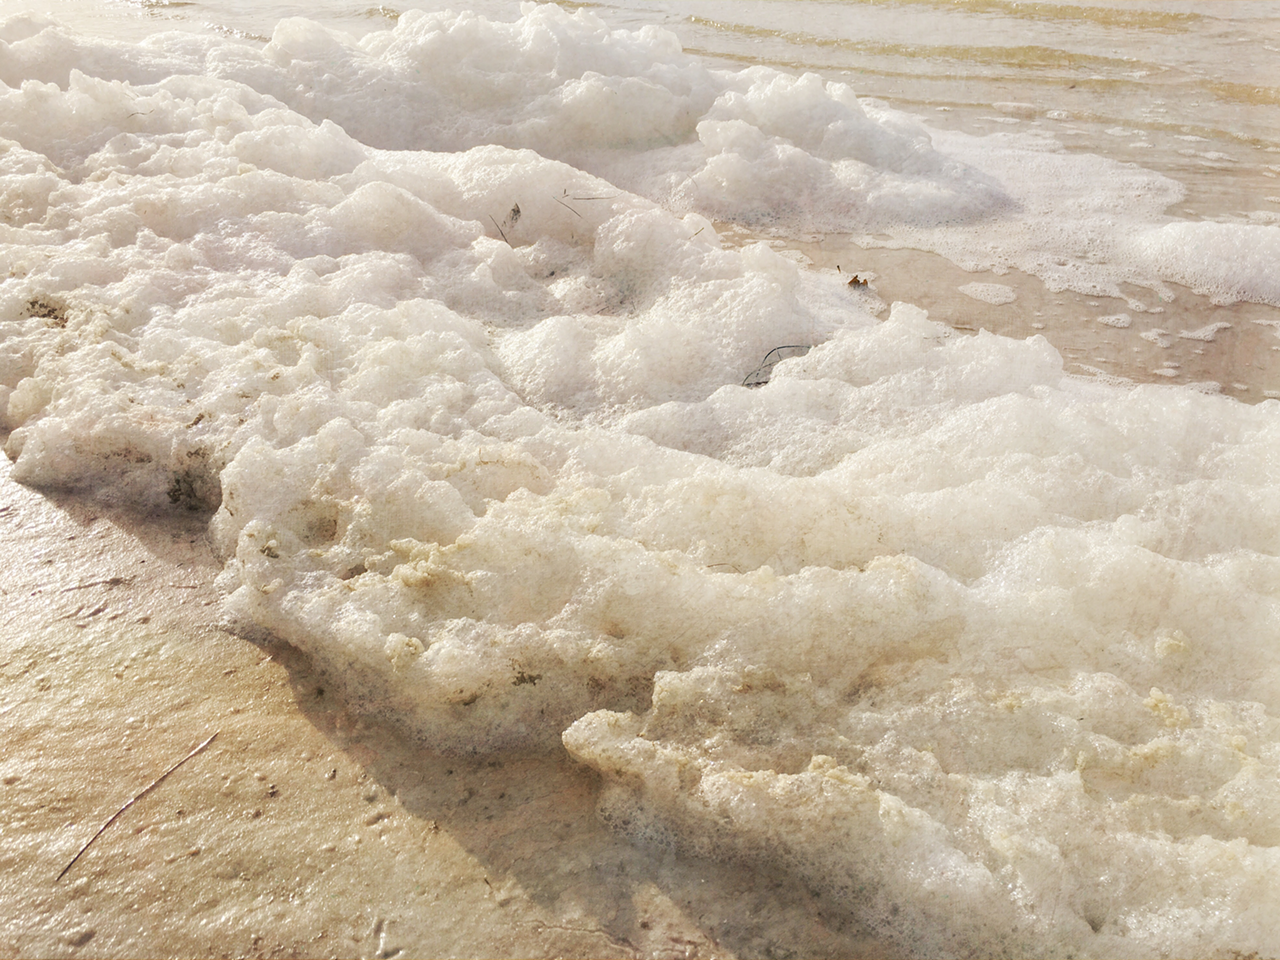 Sea foam (apps: ProCamera, Stackables).